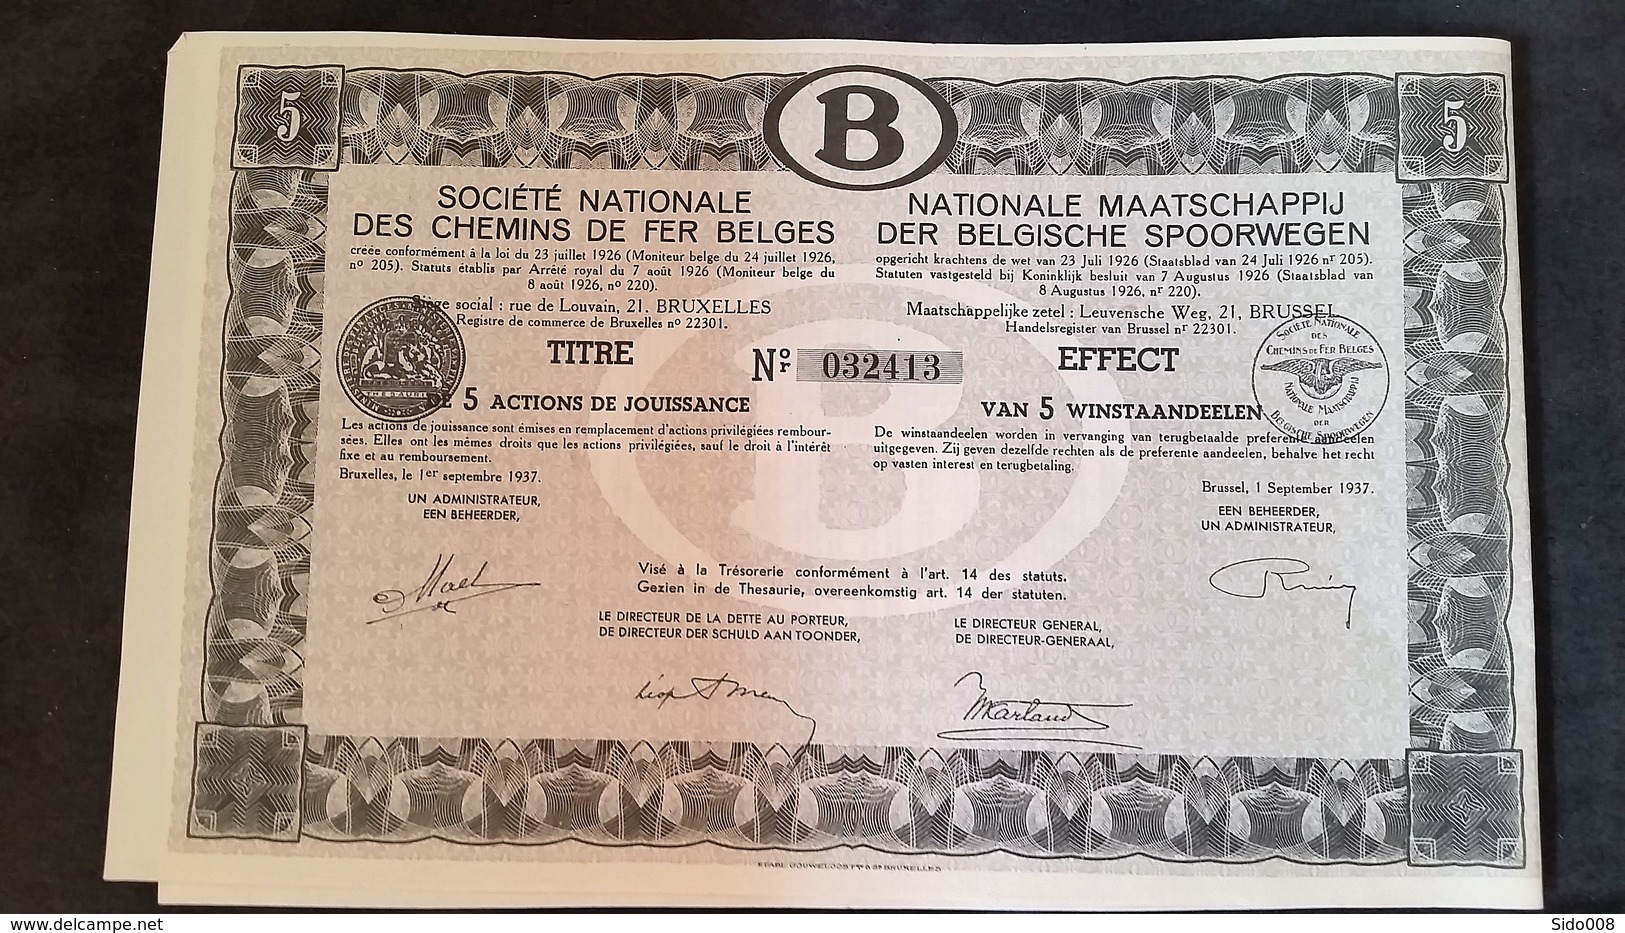 action SOCIETE NATIONALE DES CHEMINS DE FER BELGES 5 x 5 actions de jouissance -  1937